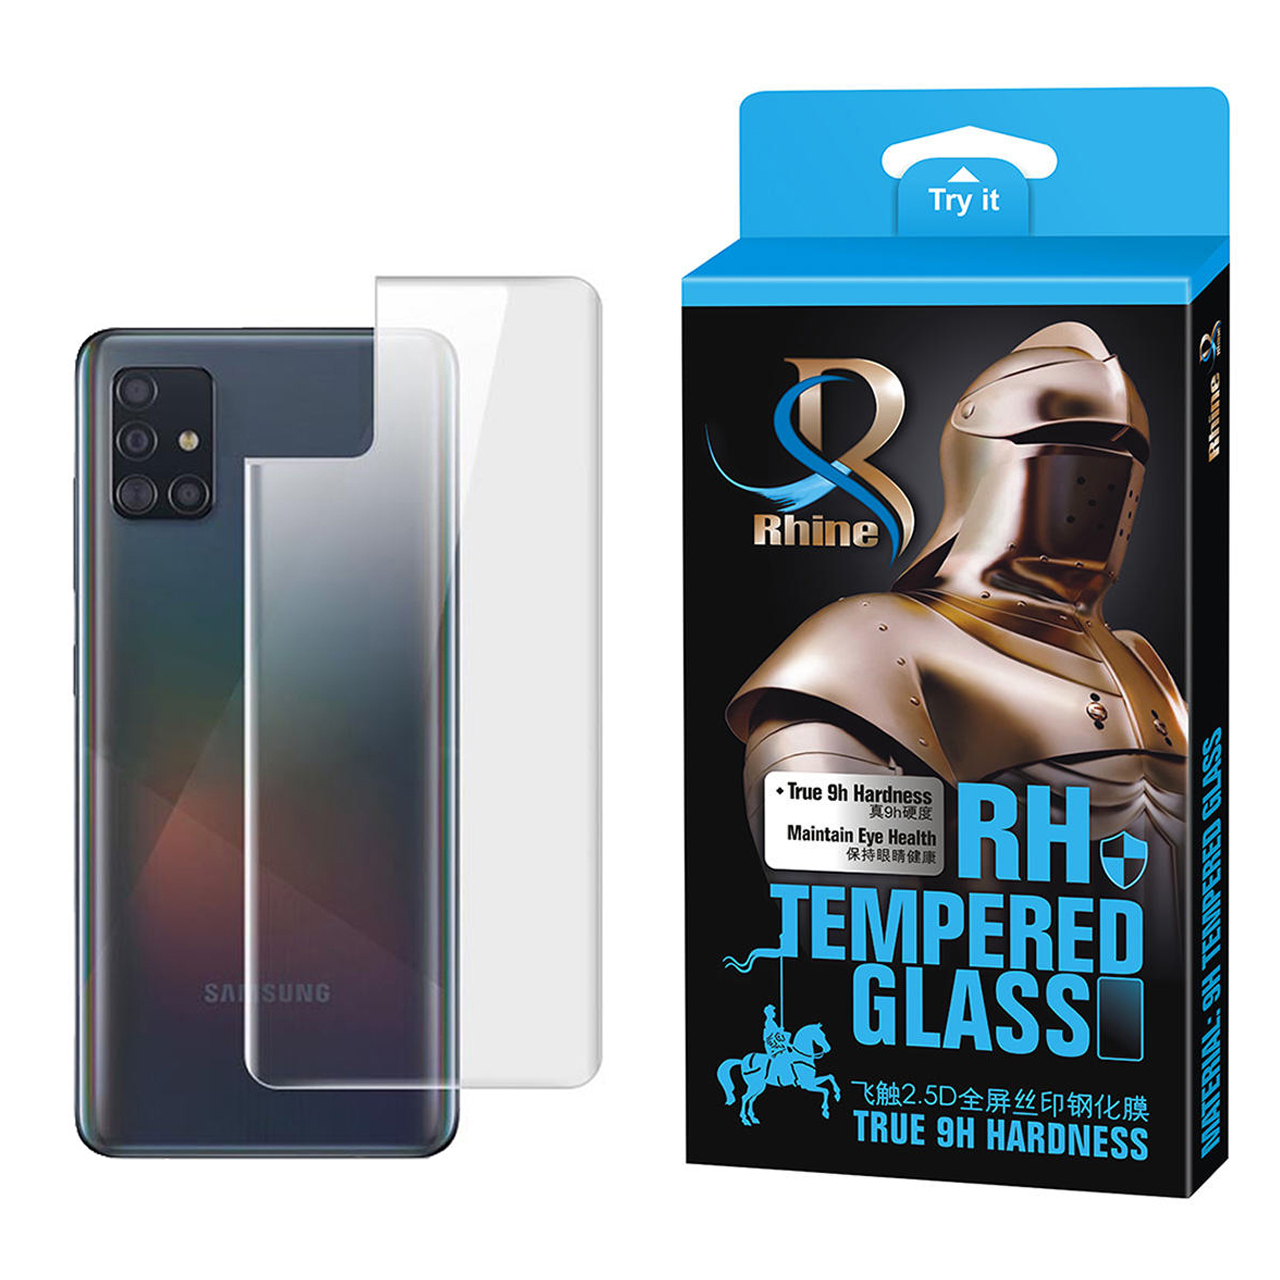 محافظ پشت گوشی راین مدل R_P0 مناسب برای گوشی موبایل سامسونگ Galaxy A71